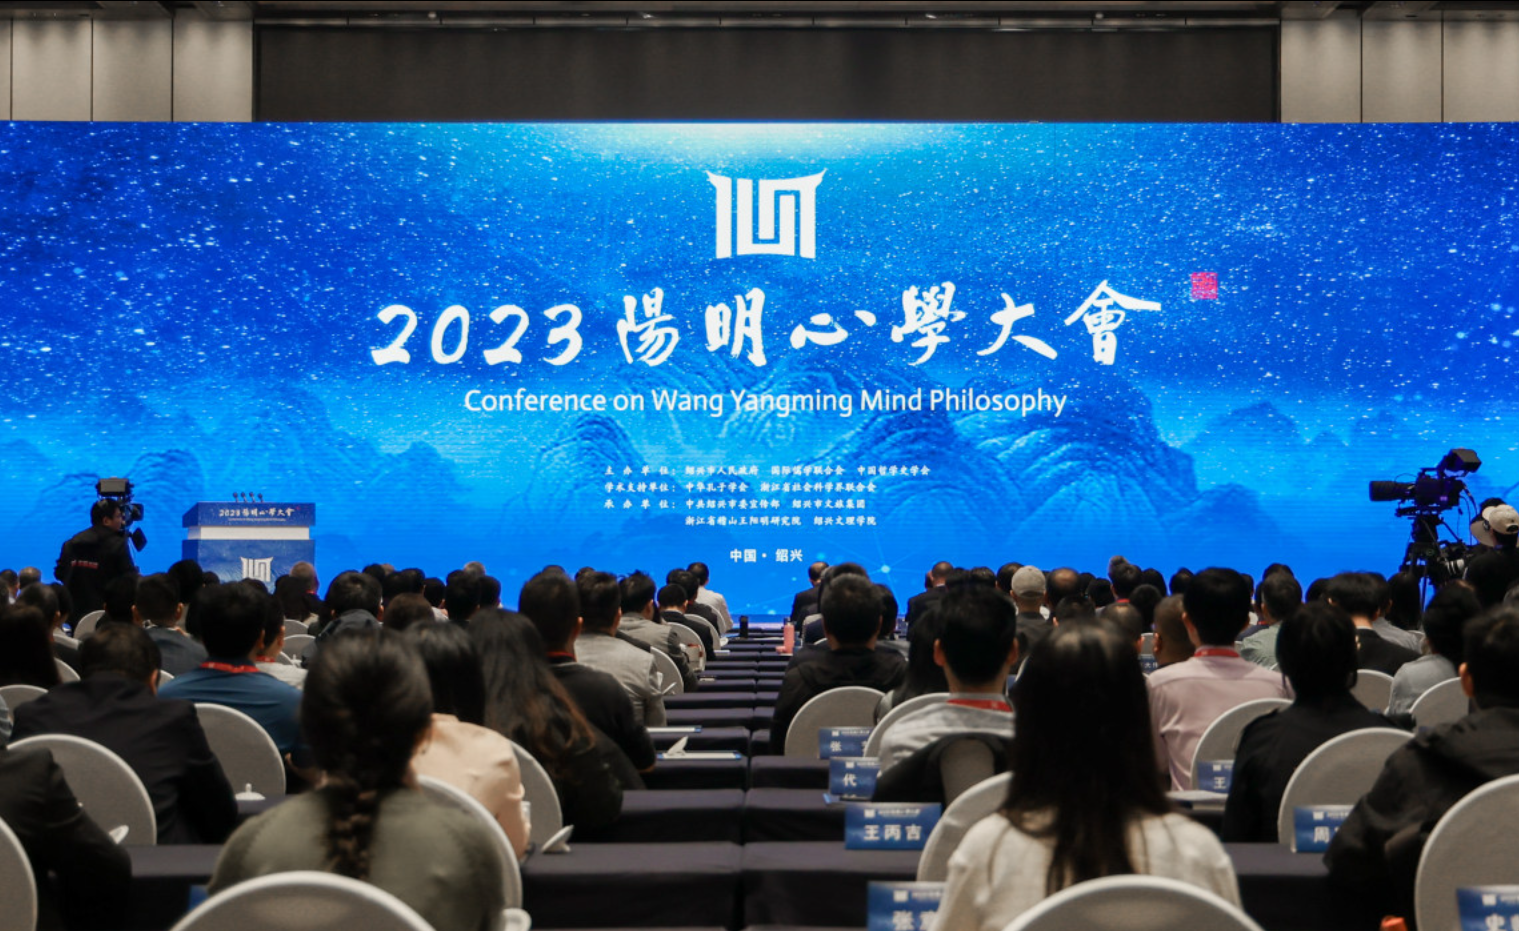 2023年阳明心学大会在浙江绍兴举行